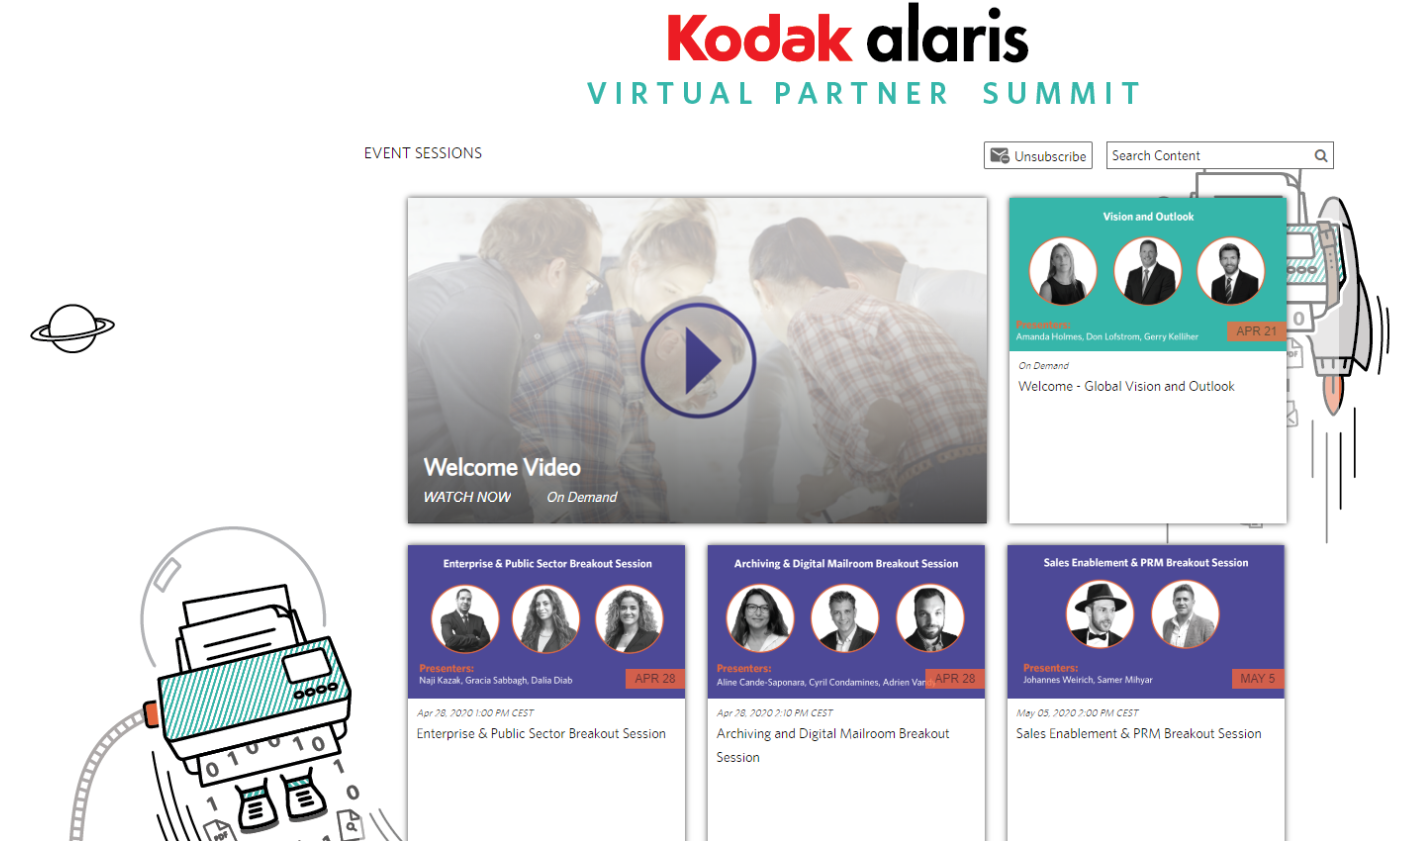 Kodak Alaris Announces 2020 Partner Of The Year Award Winners For EMEA Region